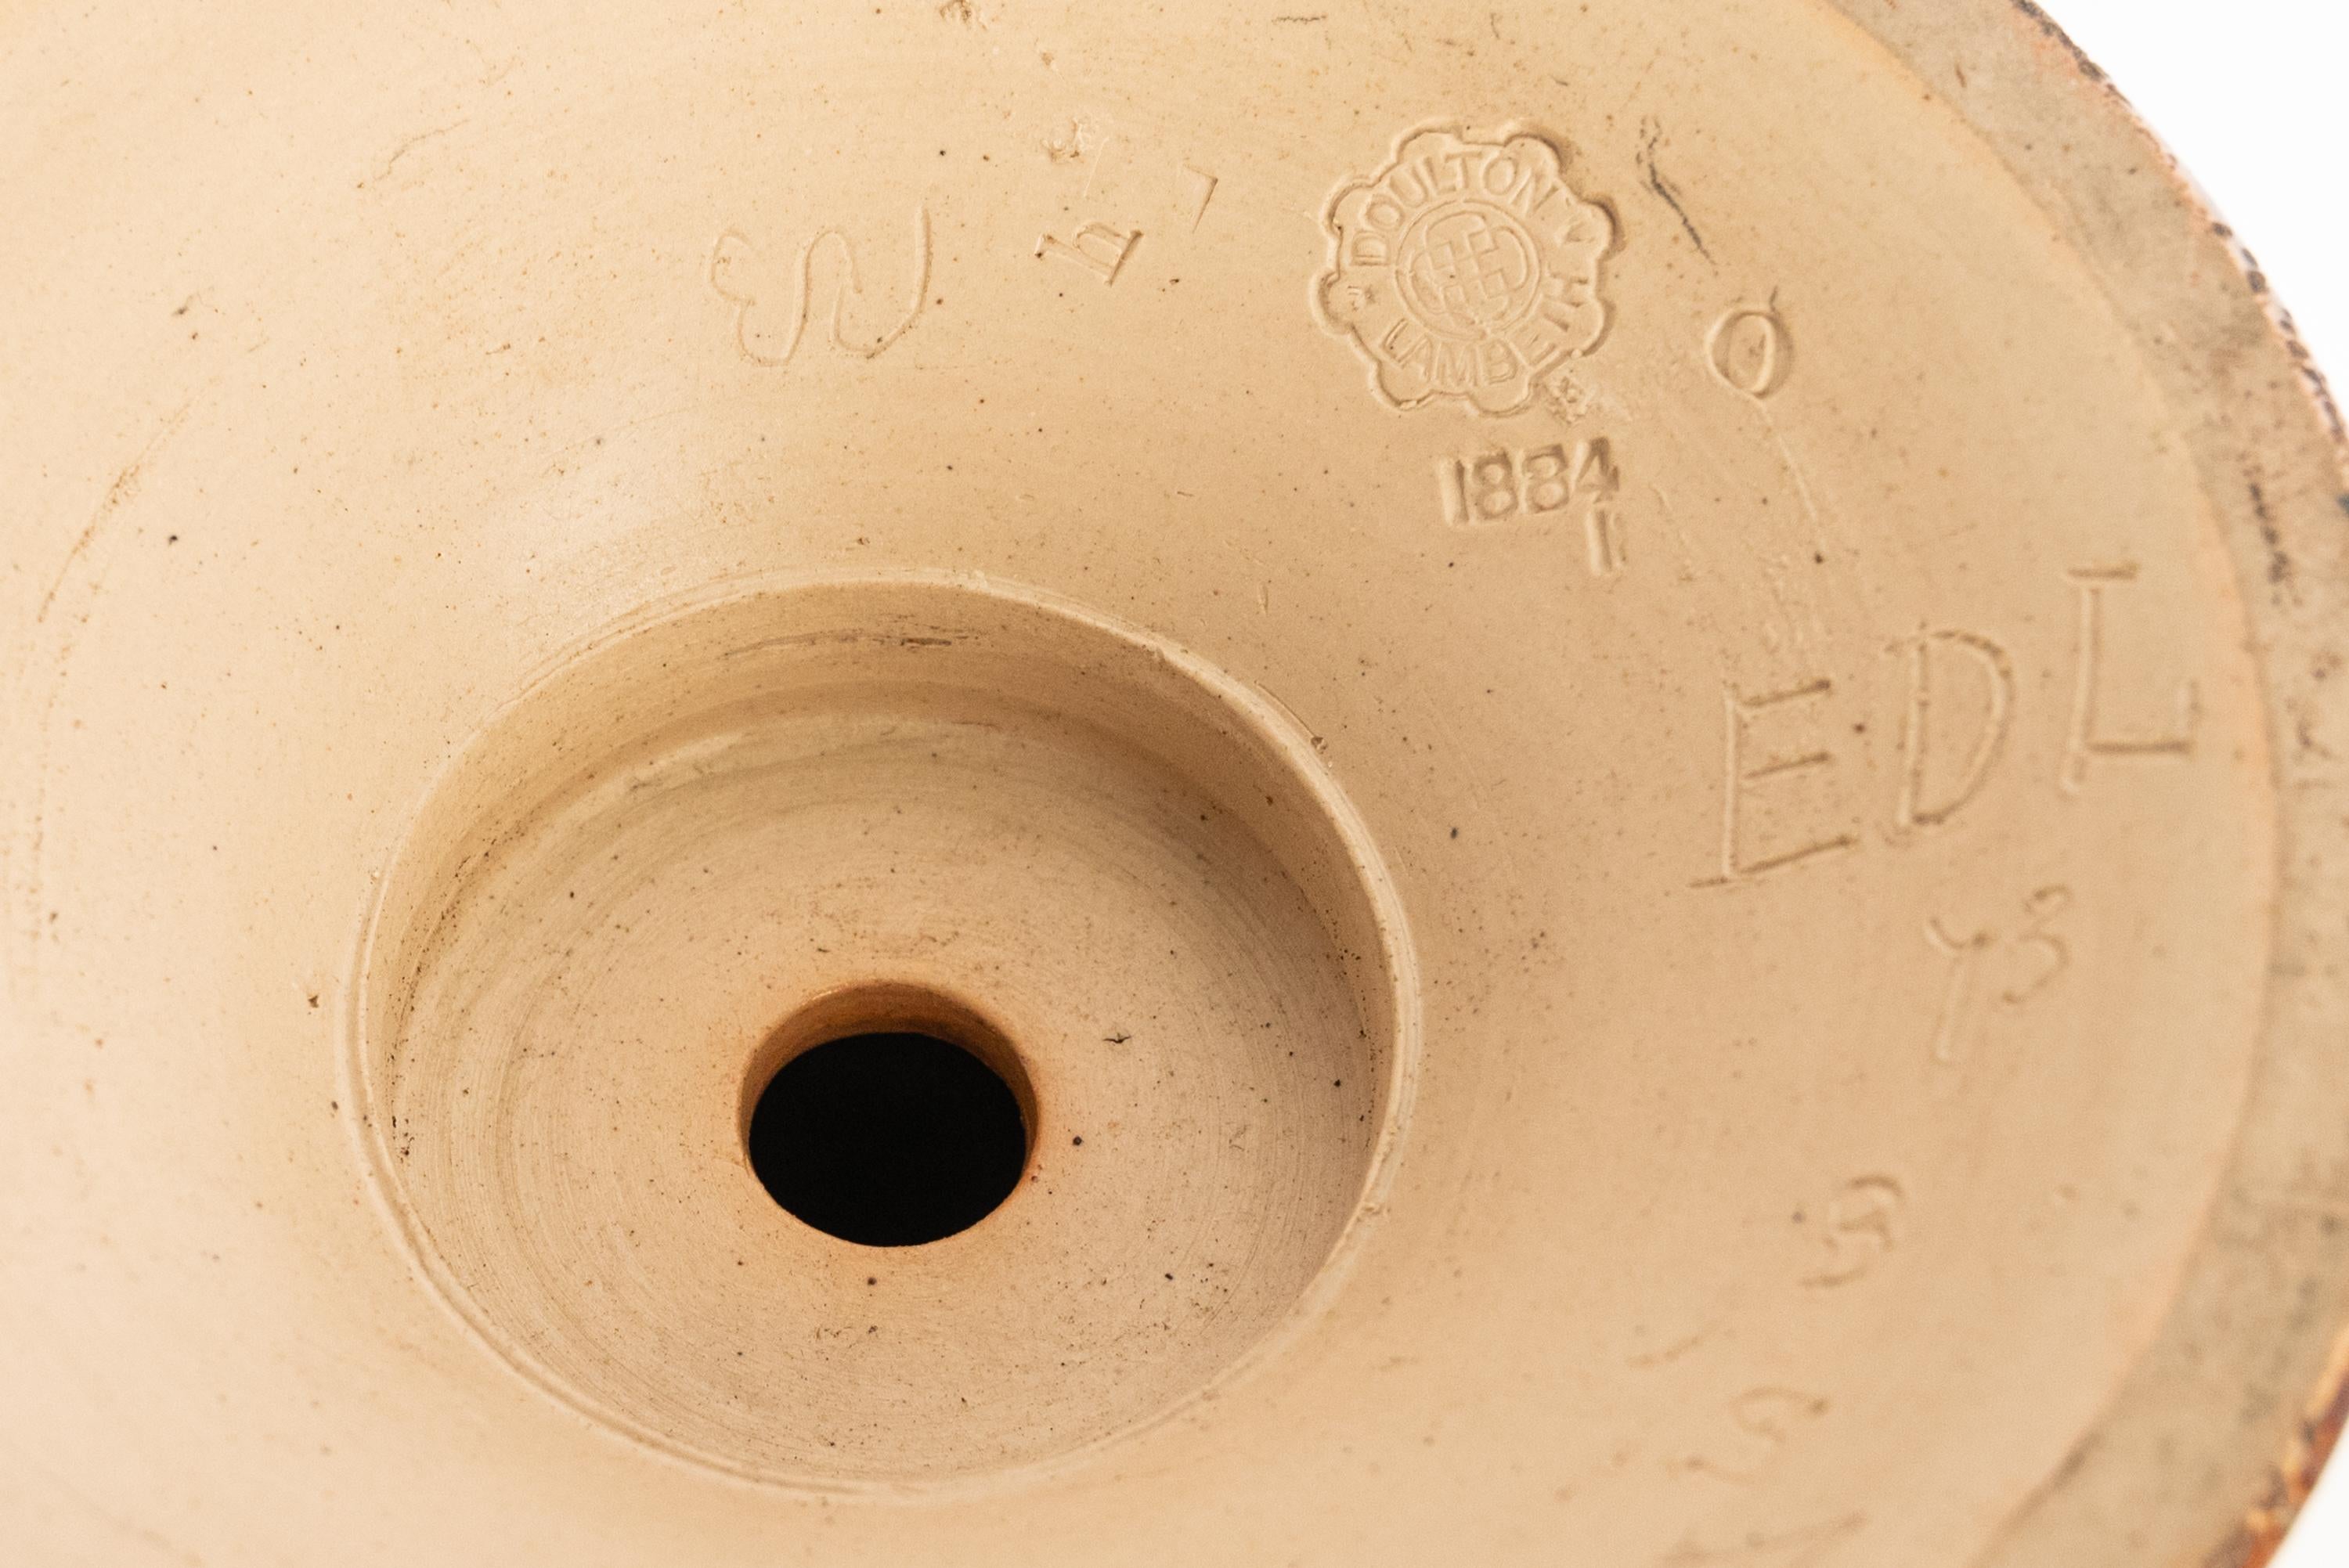 Antique Art Pottery Stoneware Dalton Lambeth Oil Lamp Signed Edith Lupton 1884 For Sale 11